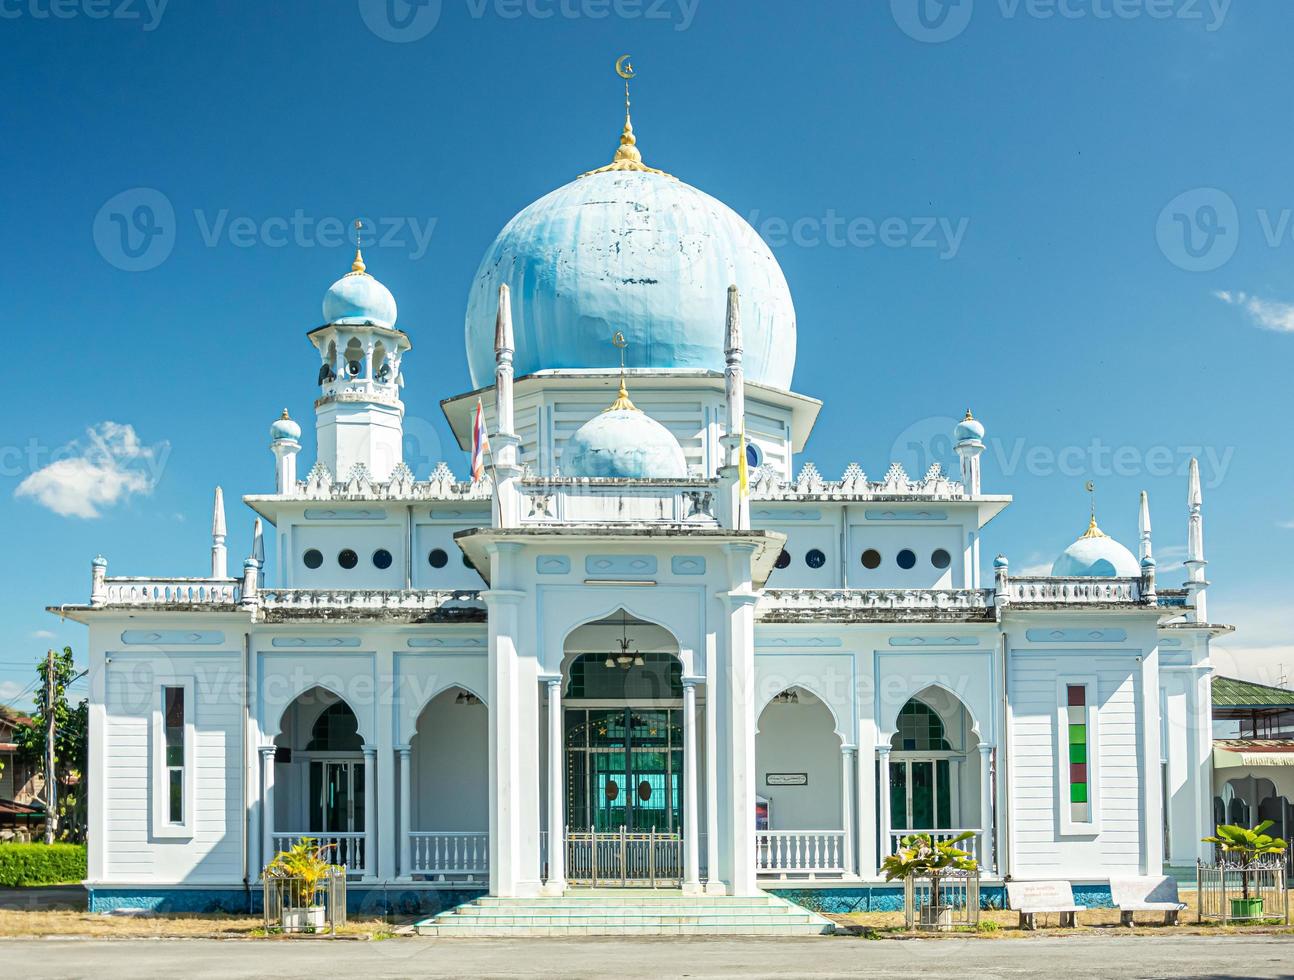 The Betong Central Mosque Masjid klang of Betong city photo